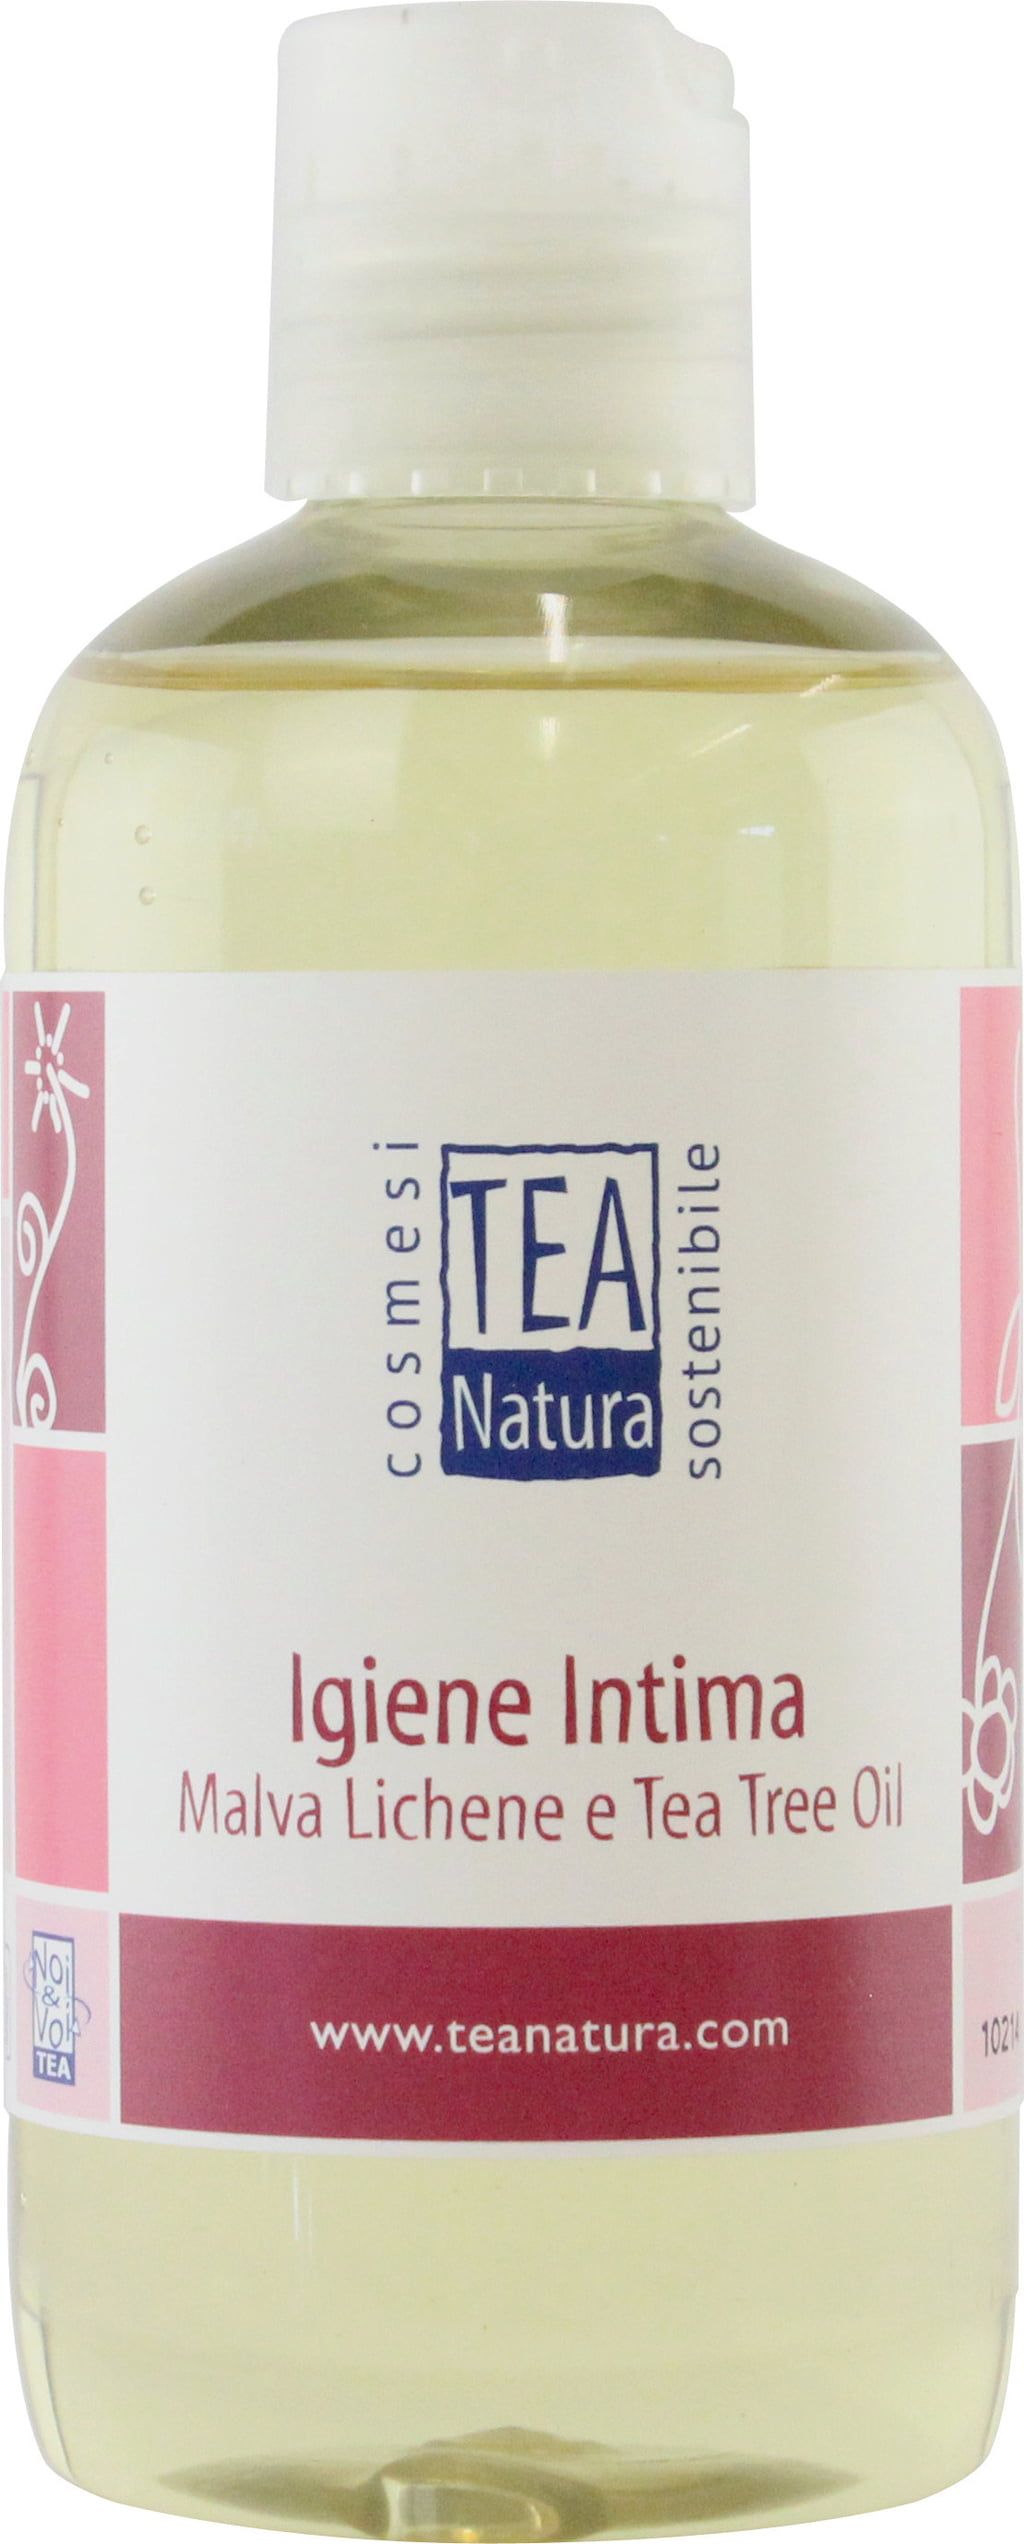 Żel do higieny intymnej z malwą i drzewem herbacianym - 250 ml